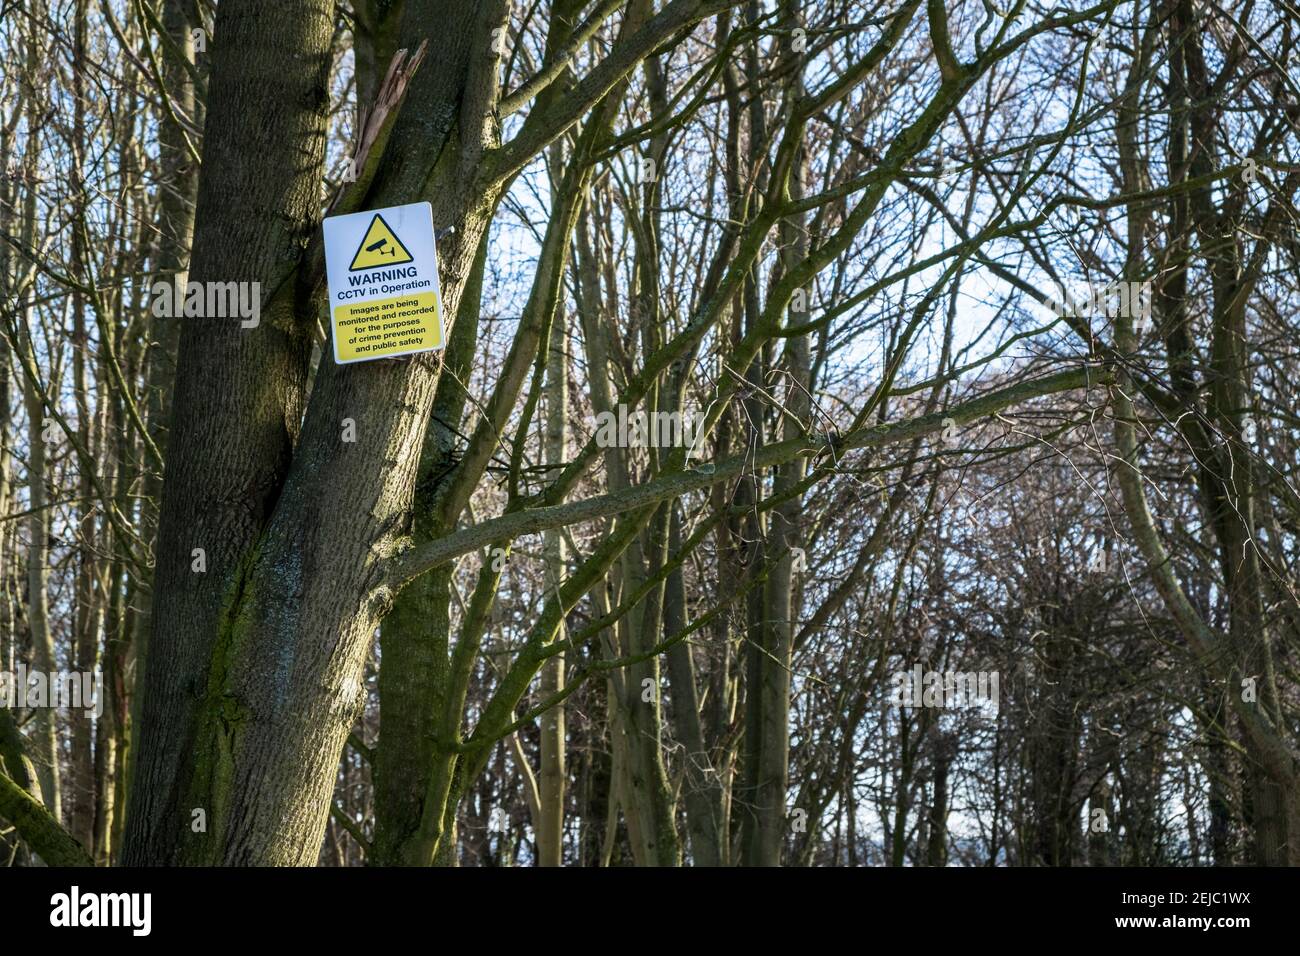 Señal de CCTV en un árbol de advertencia de CCTV en funcionamiento en un bosque, Nottinghamshire, Inglaterra, Reino Unido Foto de stock